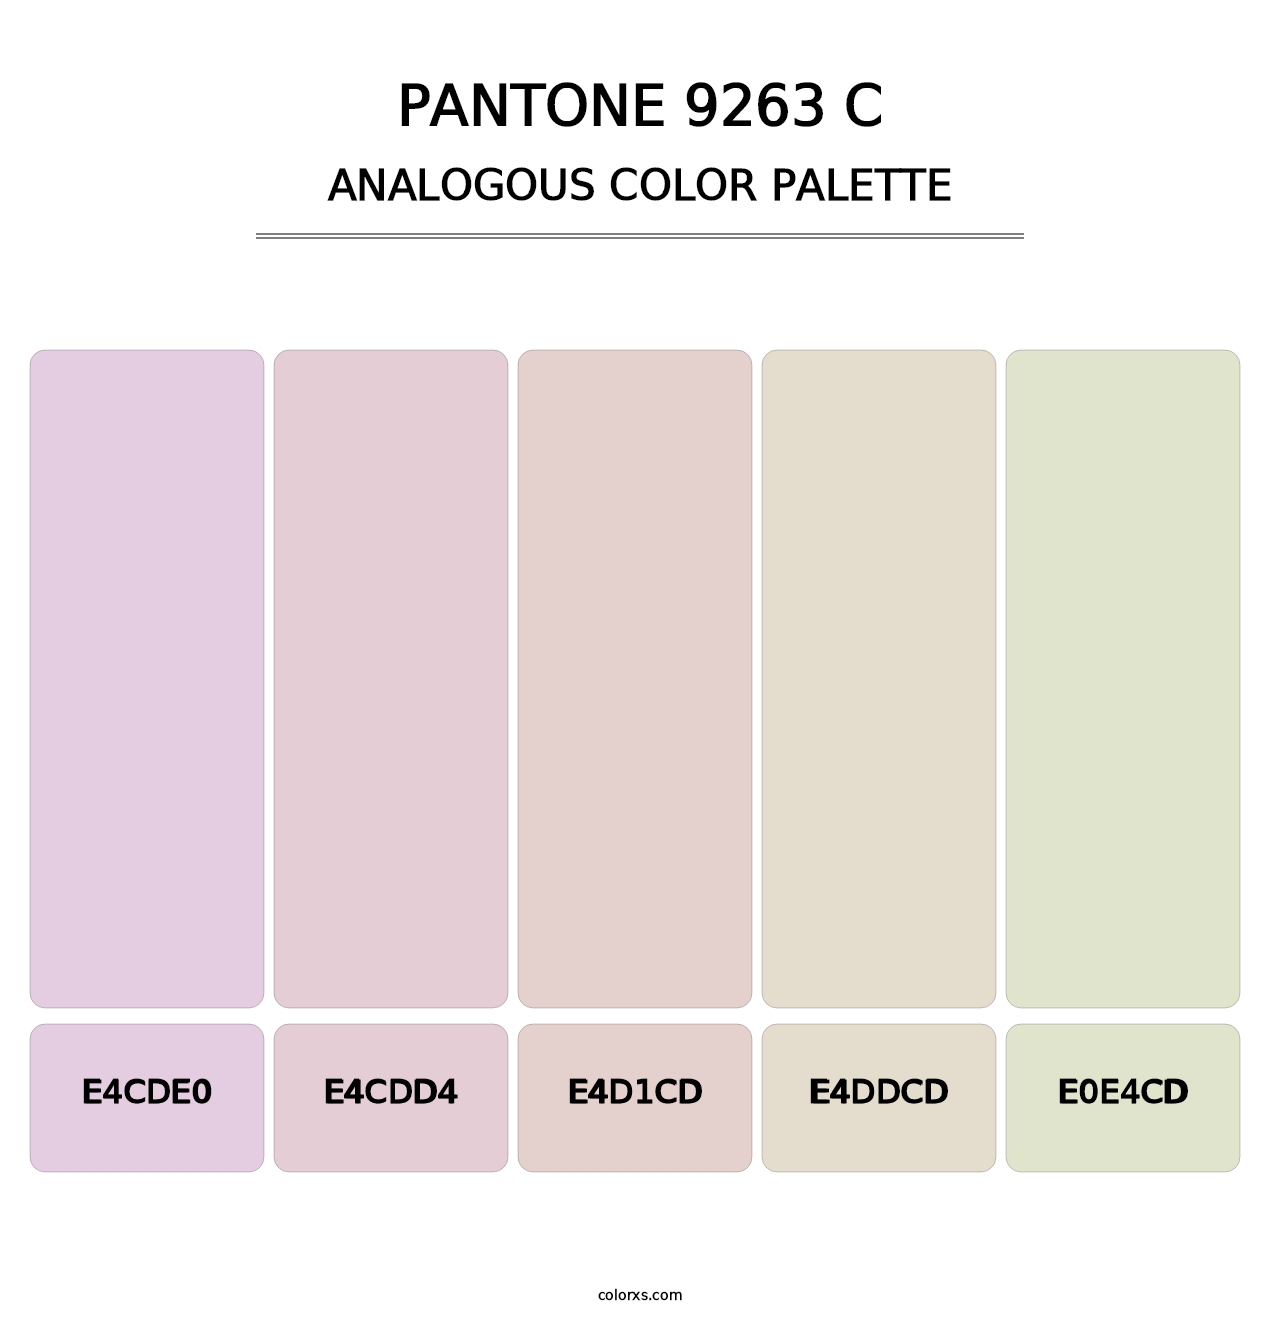 PANTONE 9263 C - Analogous Color Palette